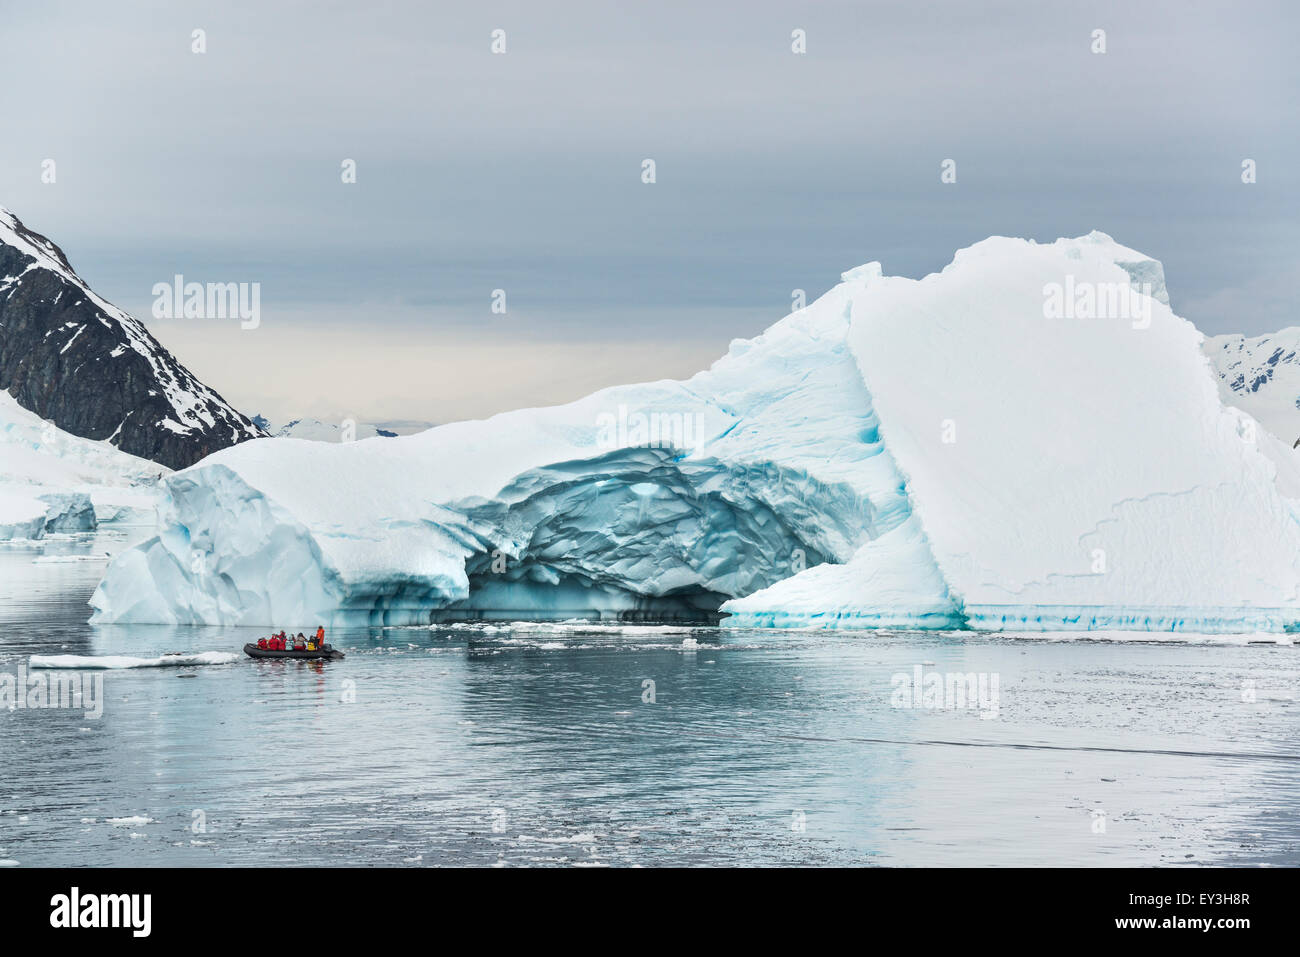 Gruppo di persone che attraversano l'Oceano Antartico in una barca di gomma, iceberg in background. Foto Stock